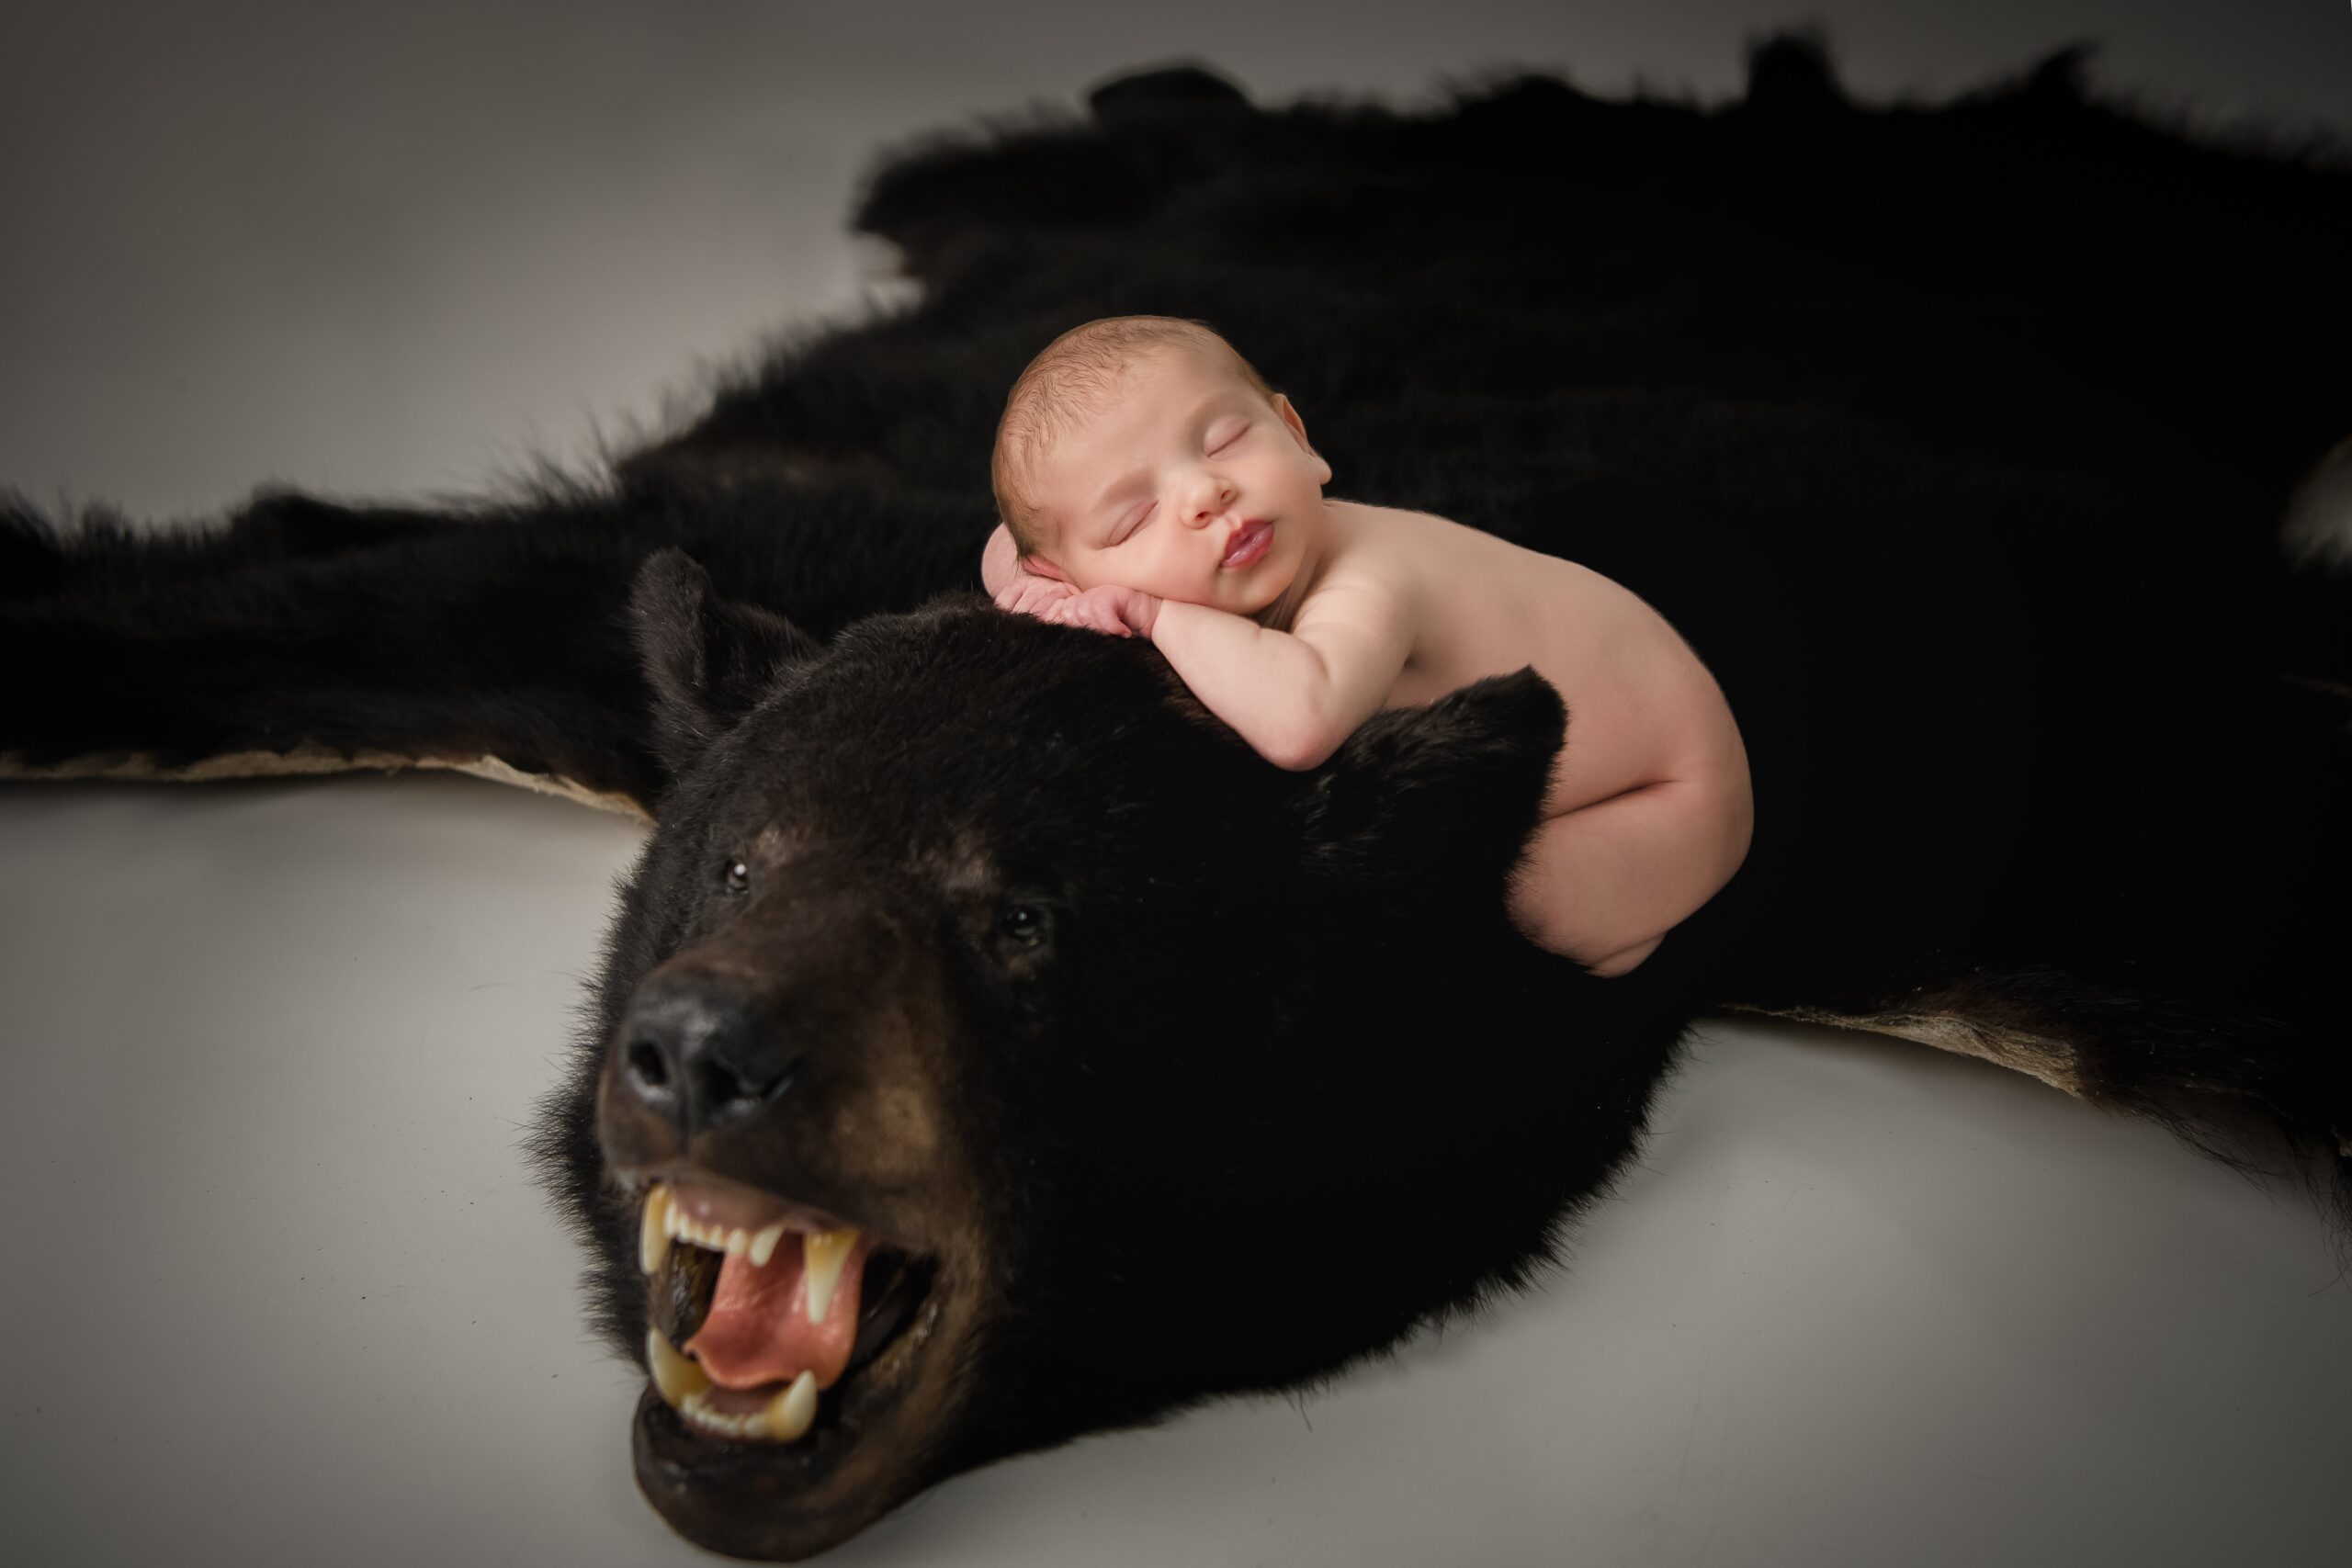 20210420  85S8483 Edit scaled - Portfolio: Infant Photography